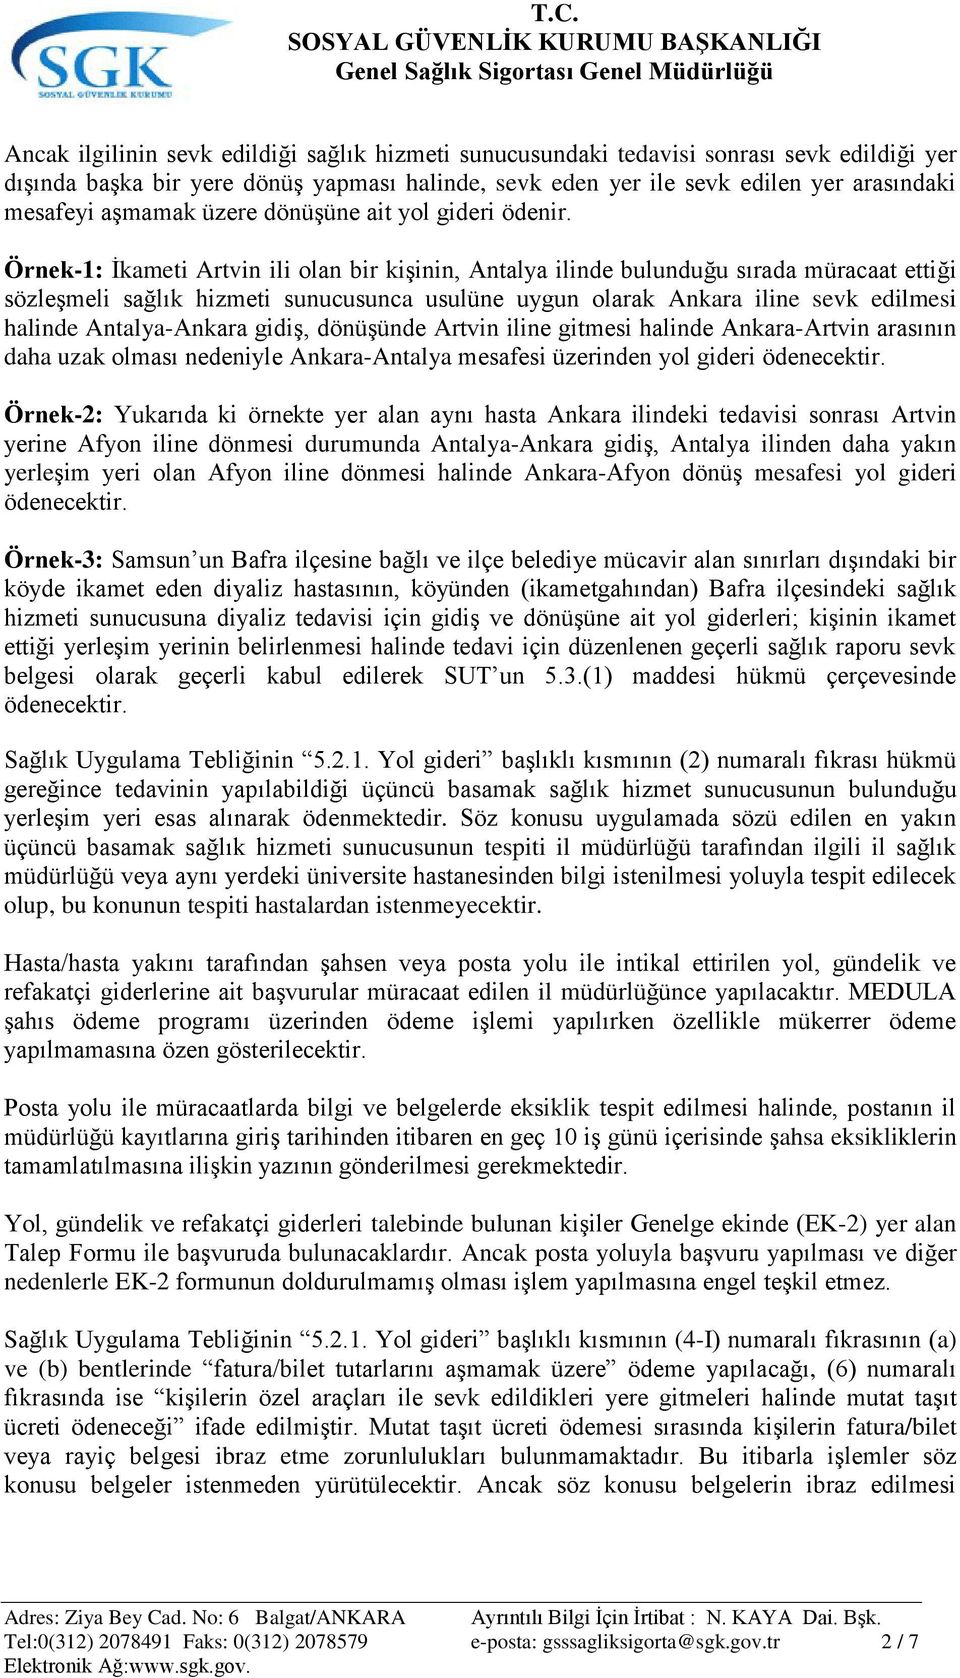 Örnek-1: Ġkameti Artvin ili olan bir kiģinin, Antalya ilinde bulunduğu sırada müracaat ettiği sözleģmeli sağlık hizmeti sunucusunca usulüne uygun olarak Ankara iline sevk edilmesi halinde